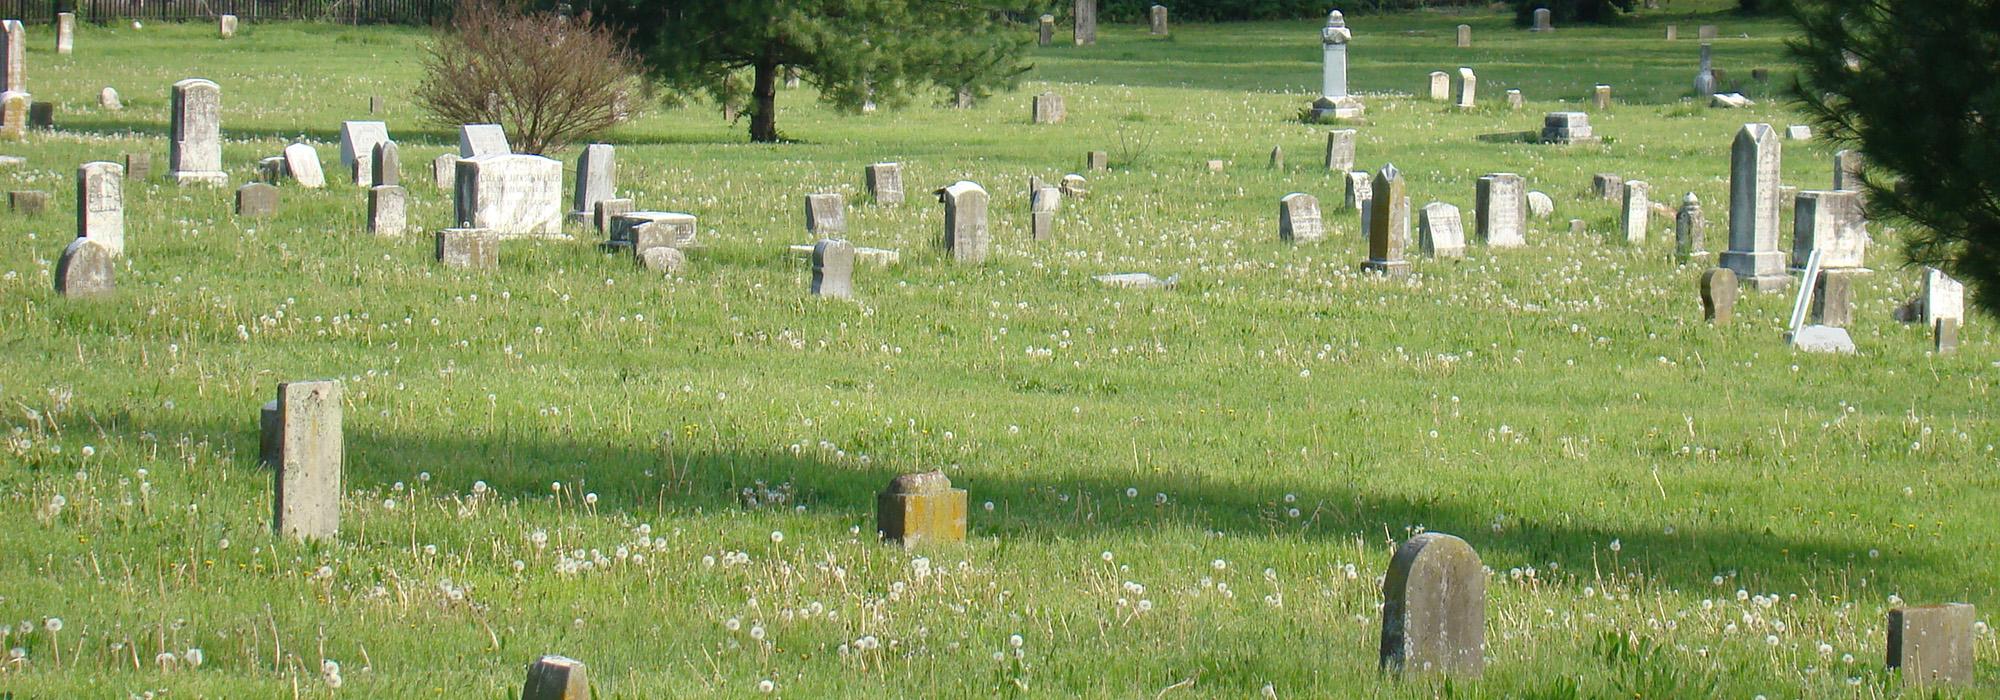 African Cemetery No. 2, Lexington, KY